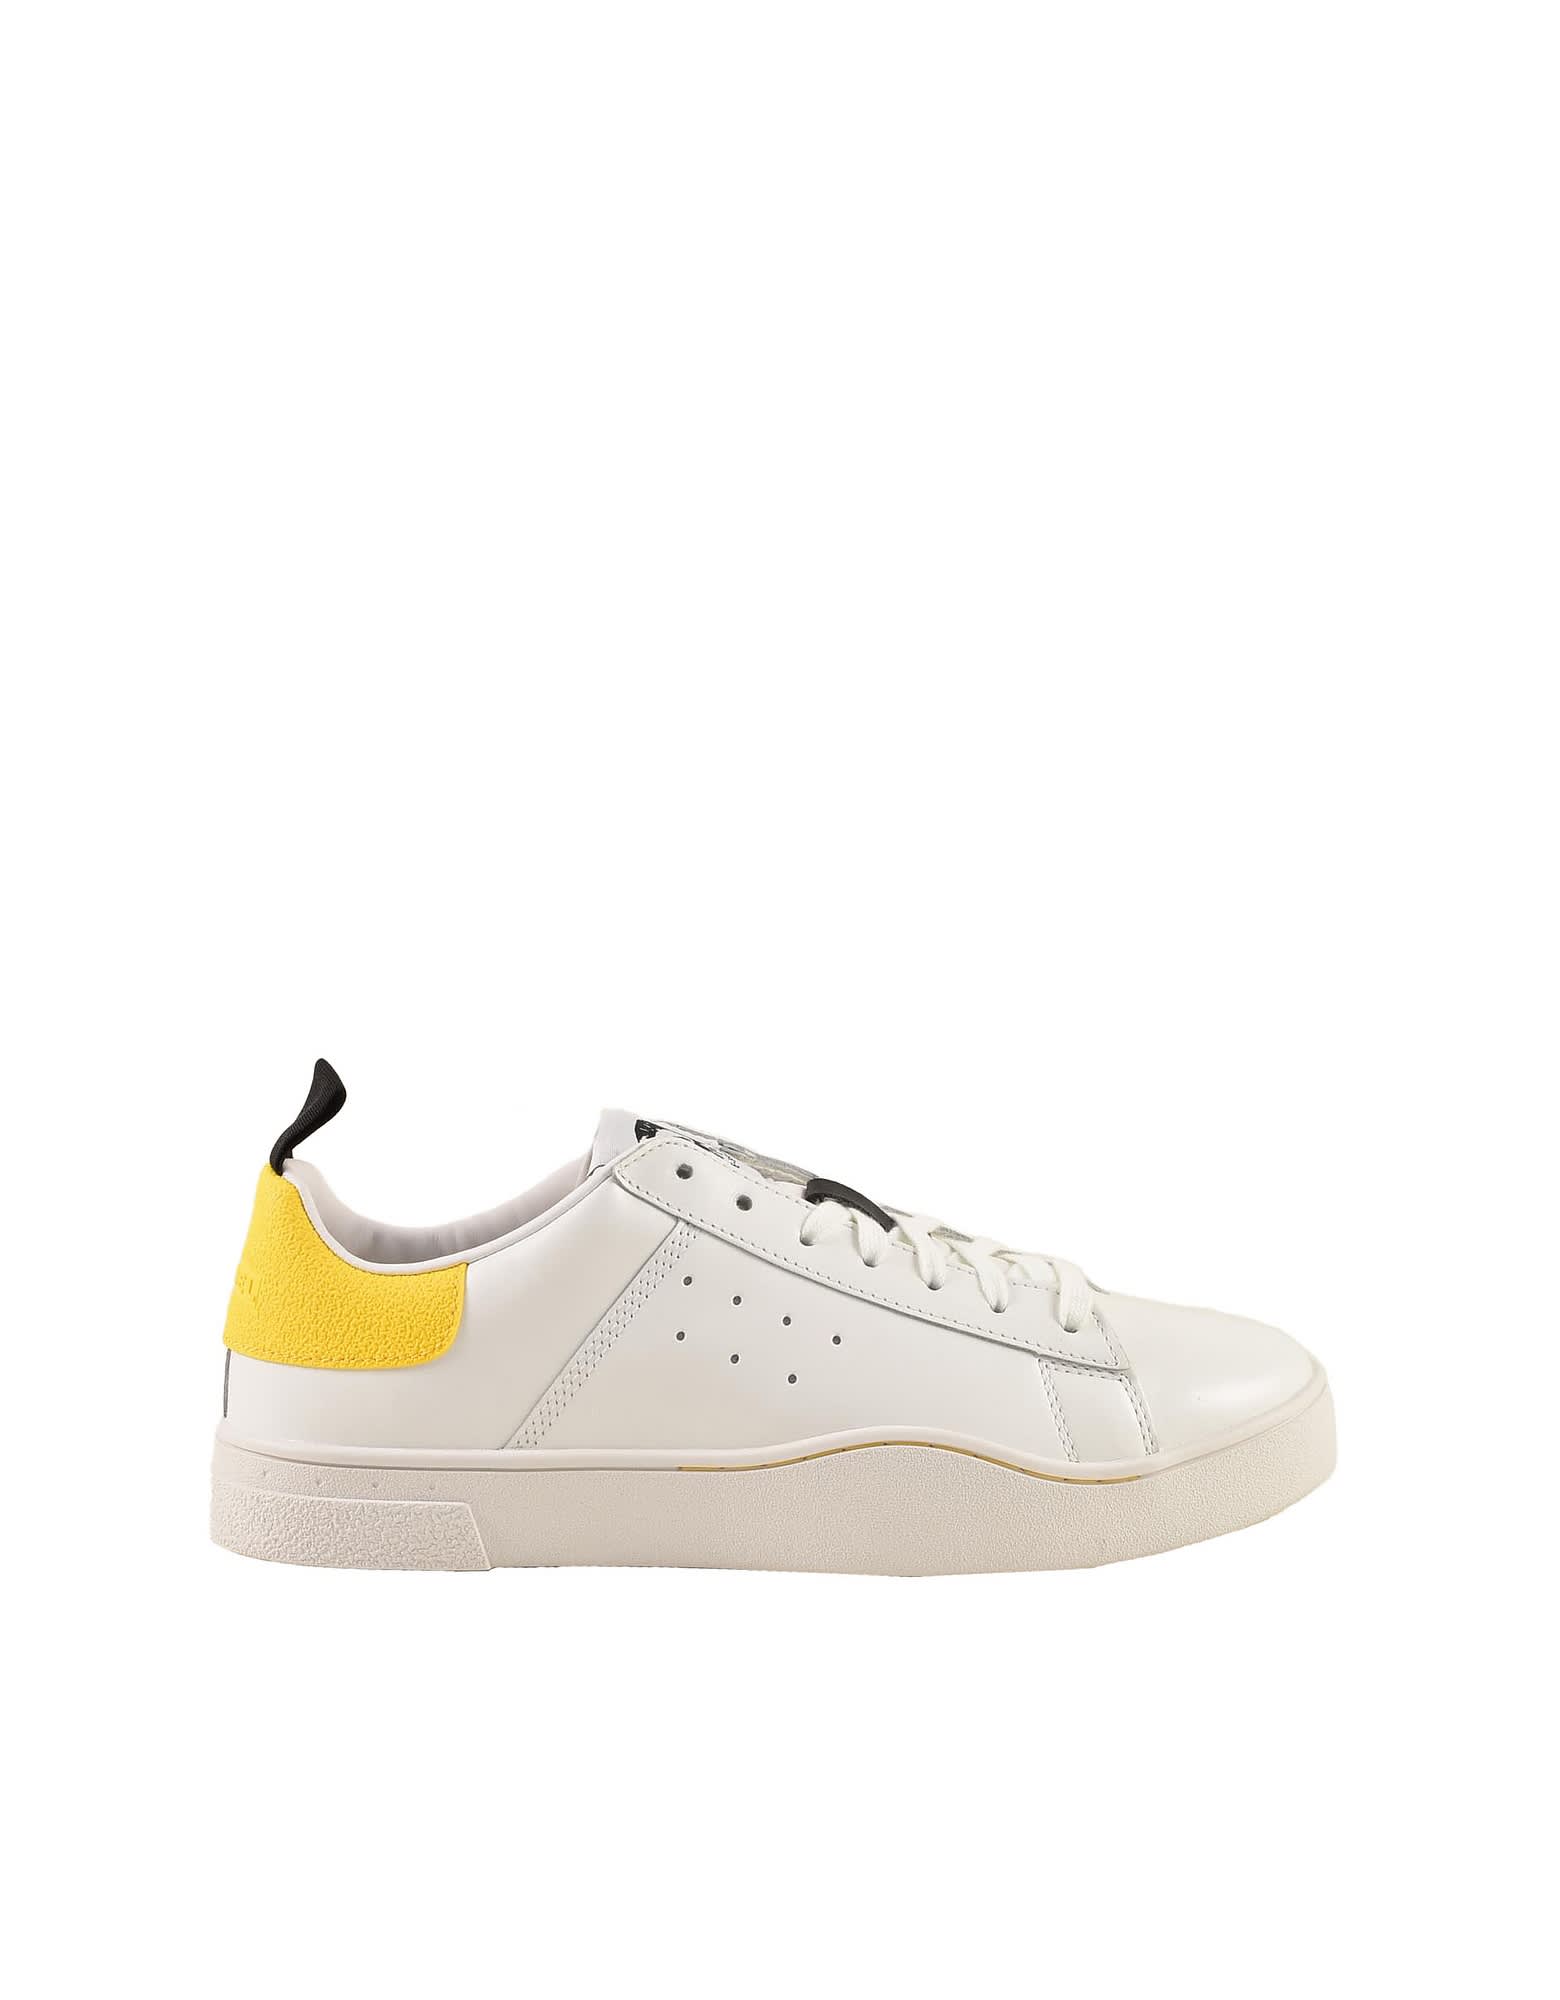 Diesel Mens White / Yellow Sneakers